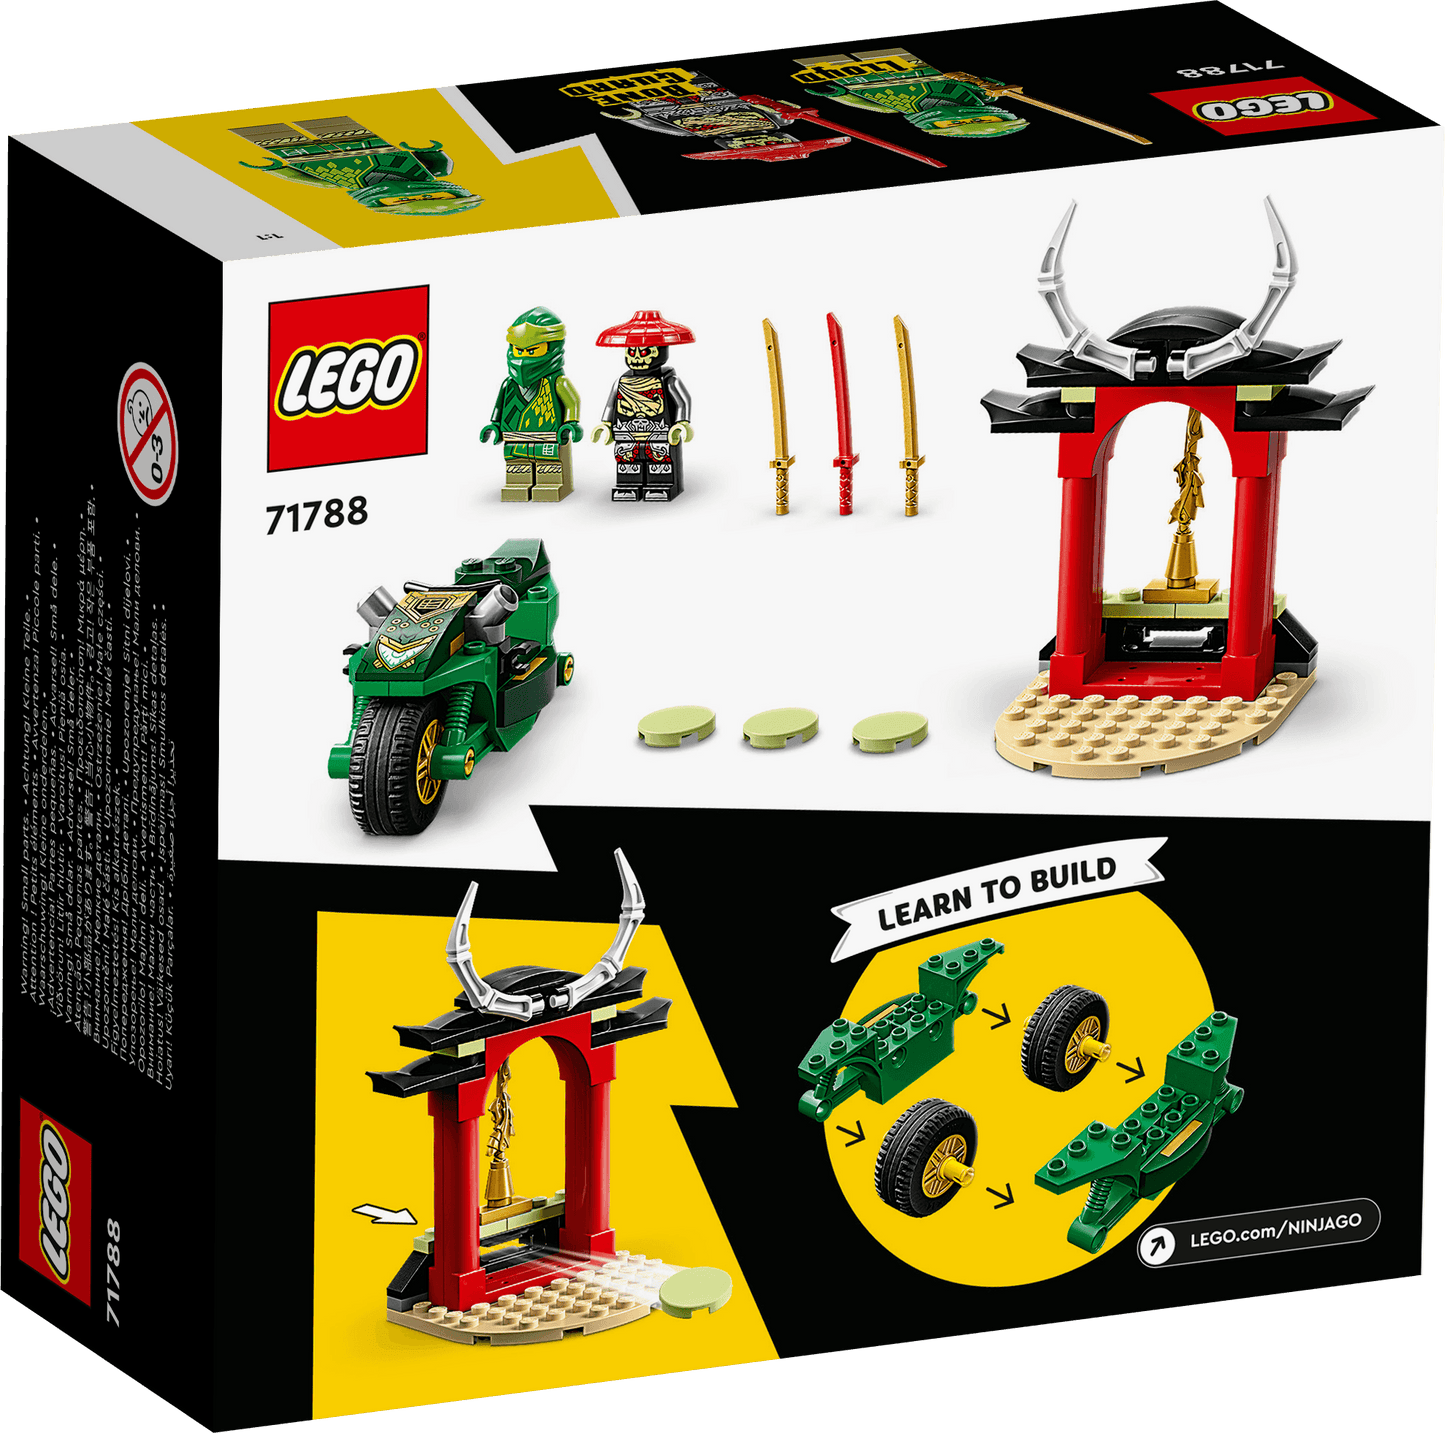 LEGO Lloyds Ninja motor 71788 Ninjago | 2TTOYS ✓ Official shop<br>